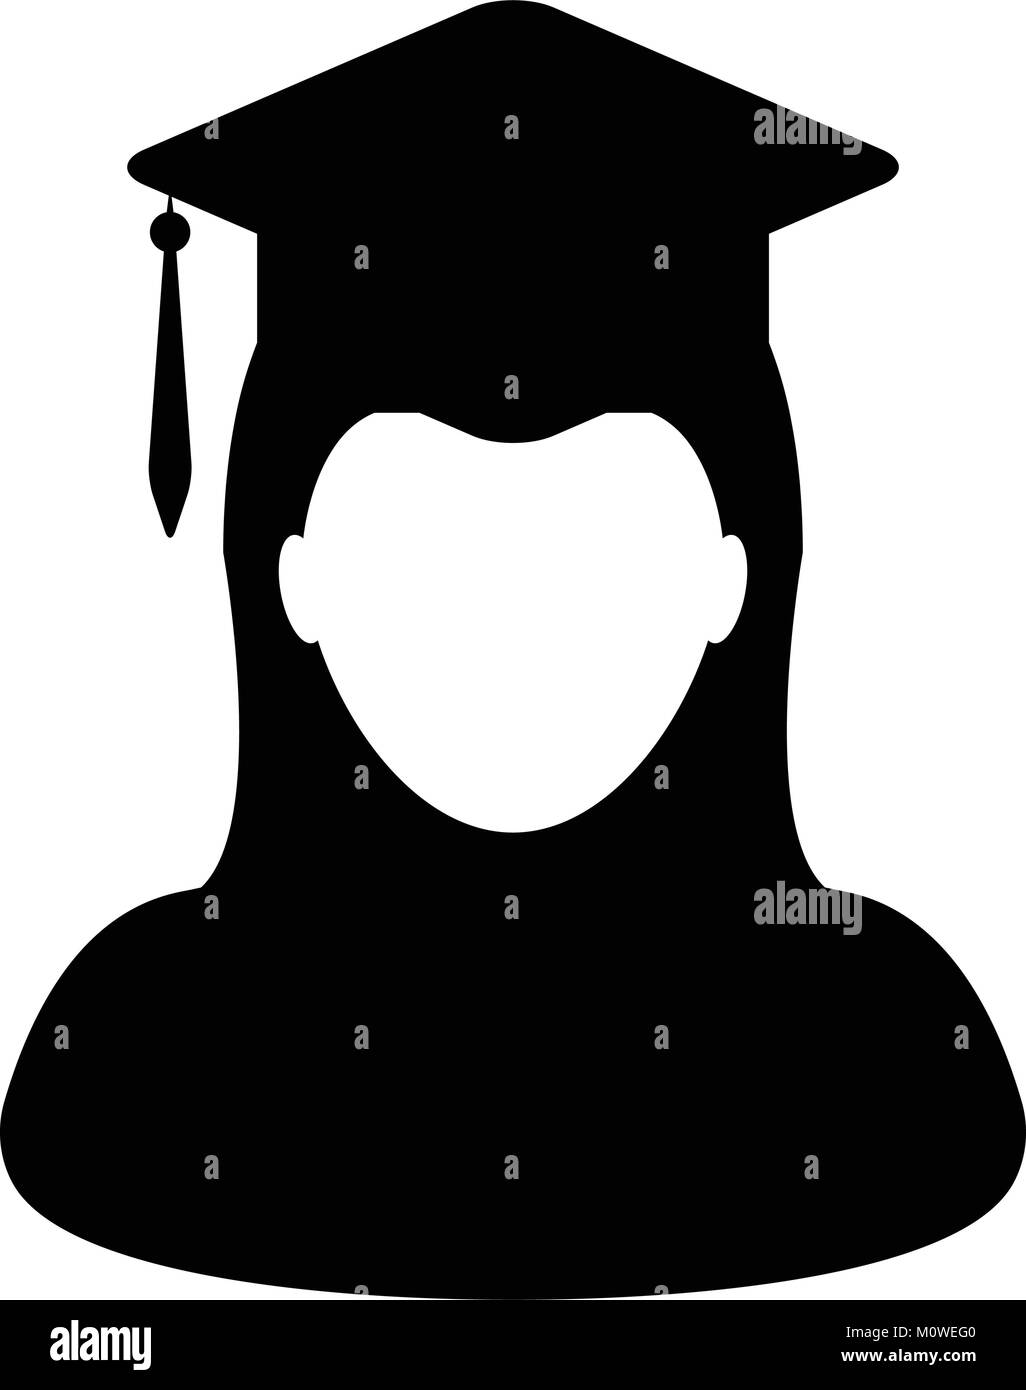 Student Symbol Vektor Graduierung mit Mörtel Board für Schule, Hochschule und Universität in Glyph Piktogramm weibliche Person Profil Avatar Abbildung Stock Vektor